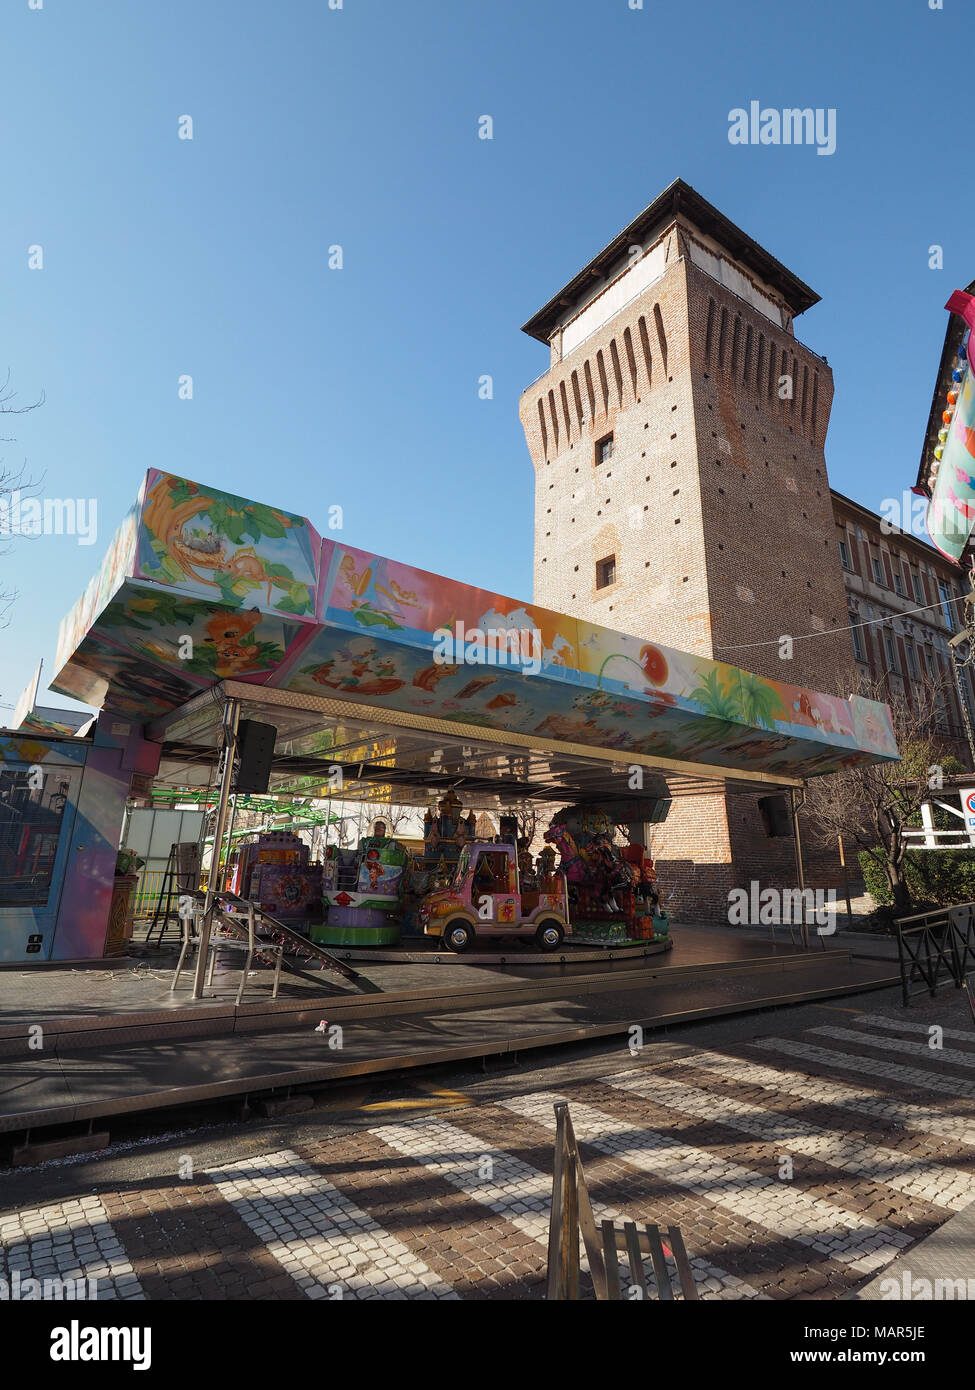 SETTIMO TORINESE, Italia - circa Febbraio 2018: giostre presso il parco di divertimenti (chiamato Luna Park in italiano) Foto Stock